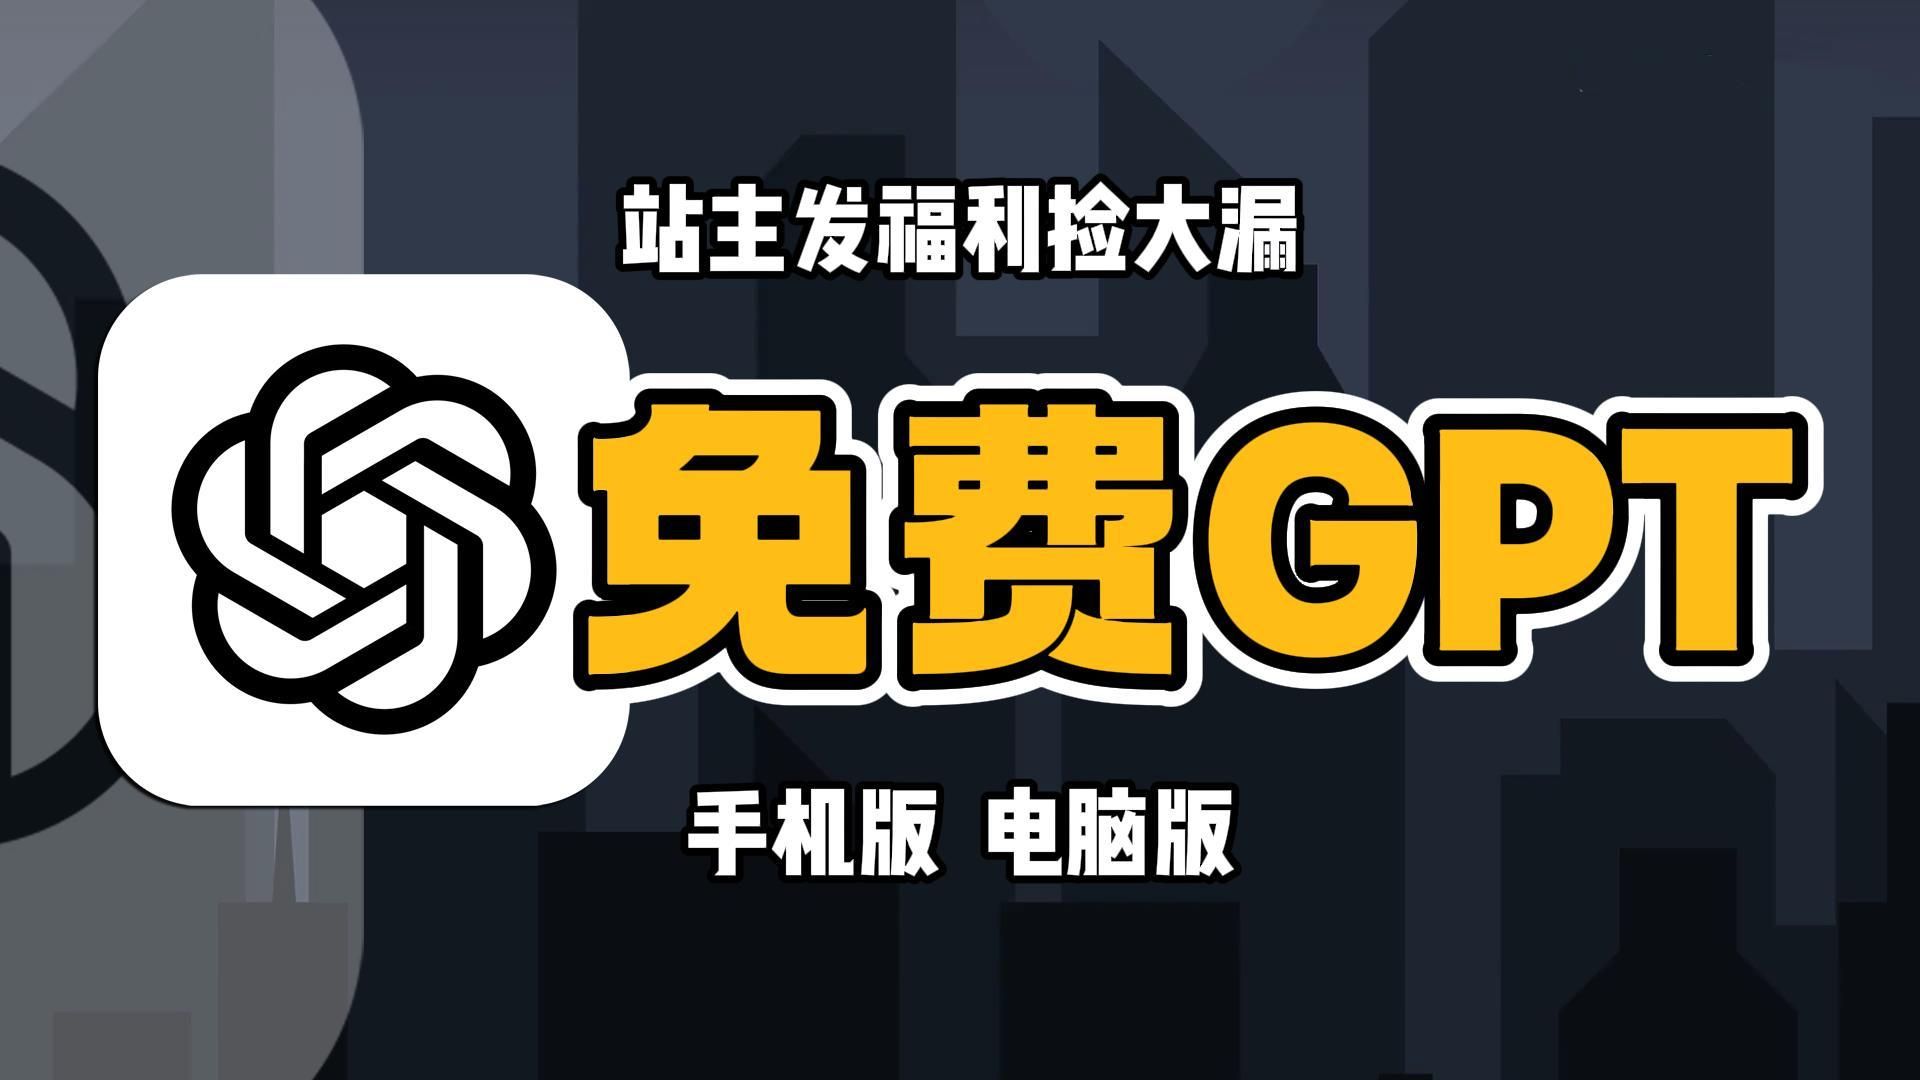 【国内白嫖】5月14日最新ChatGPT4.0